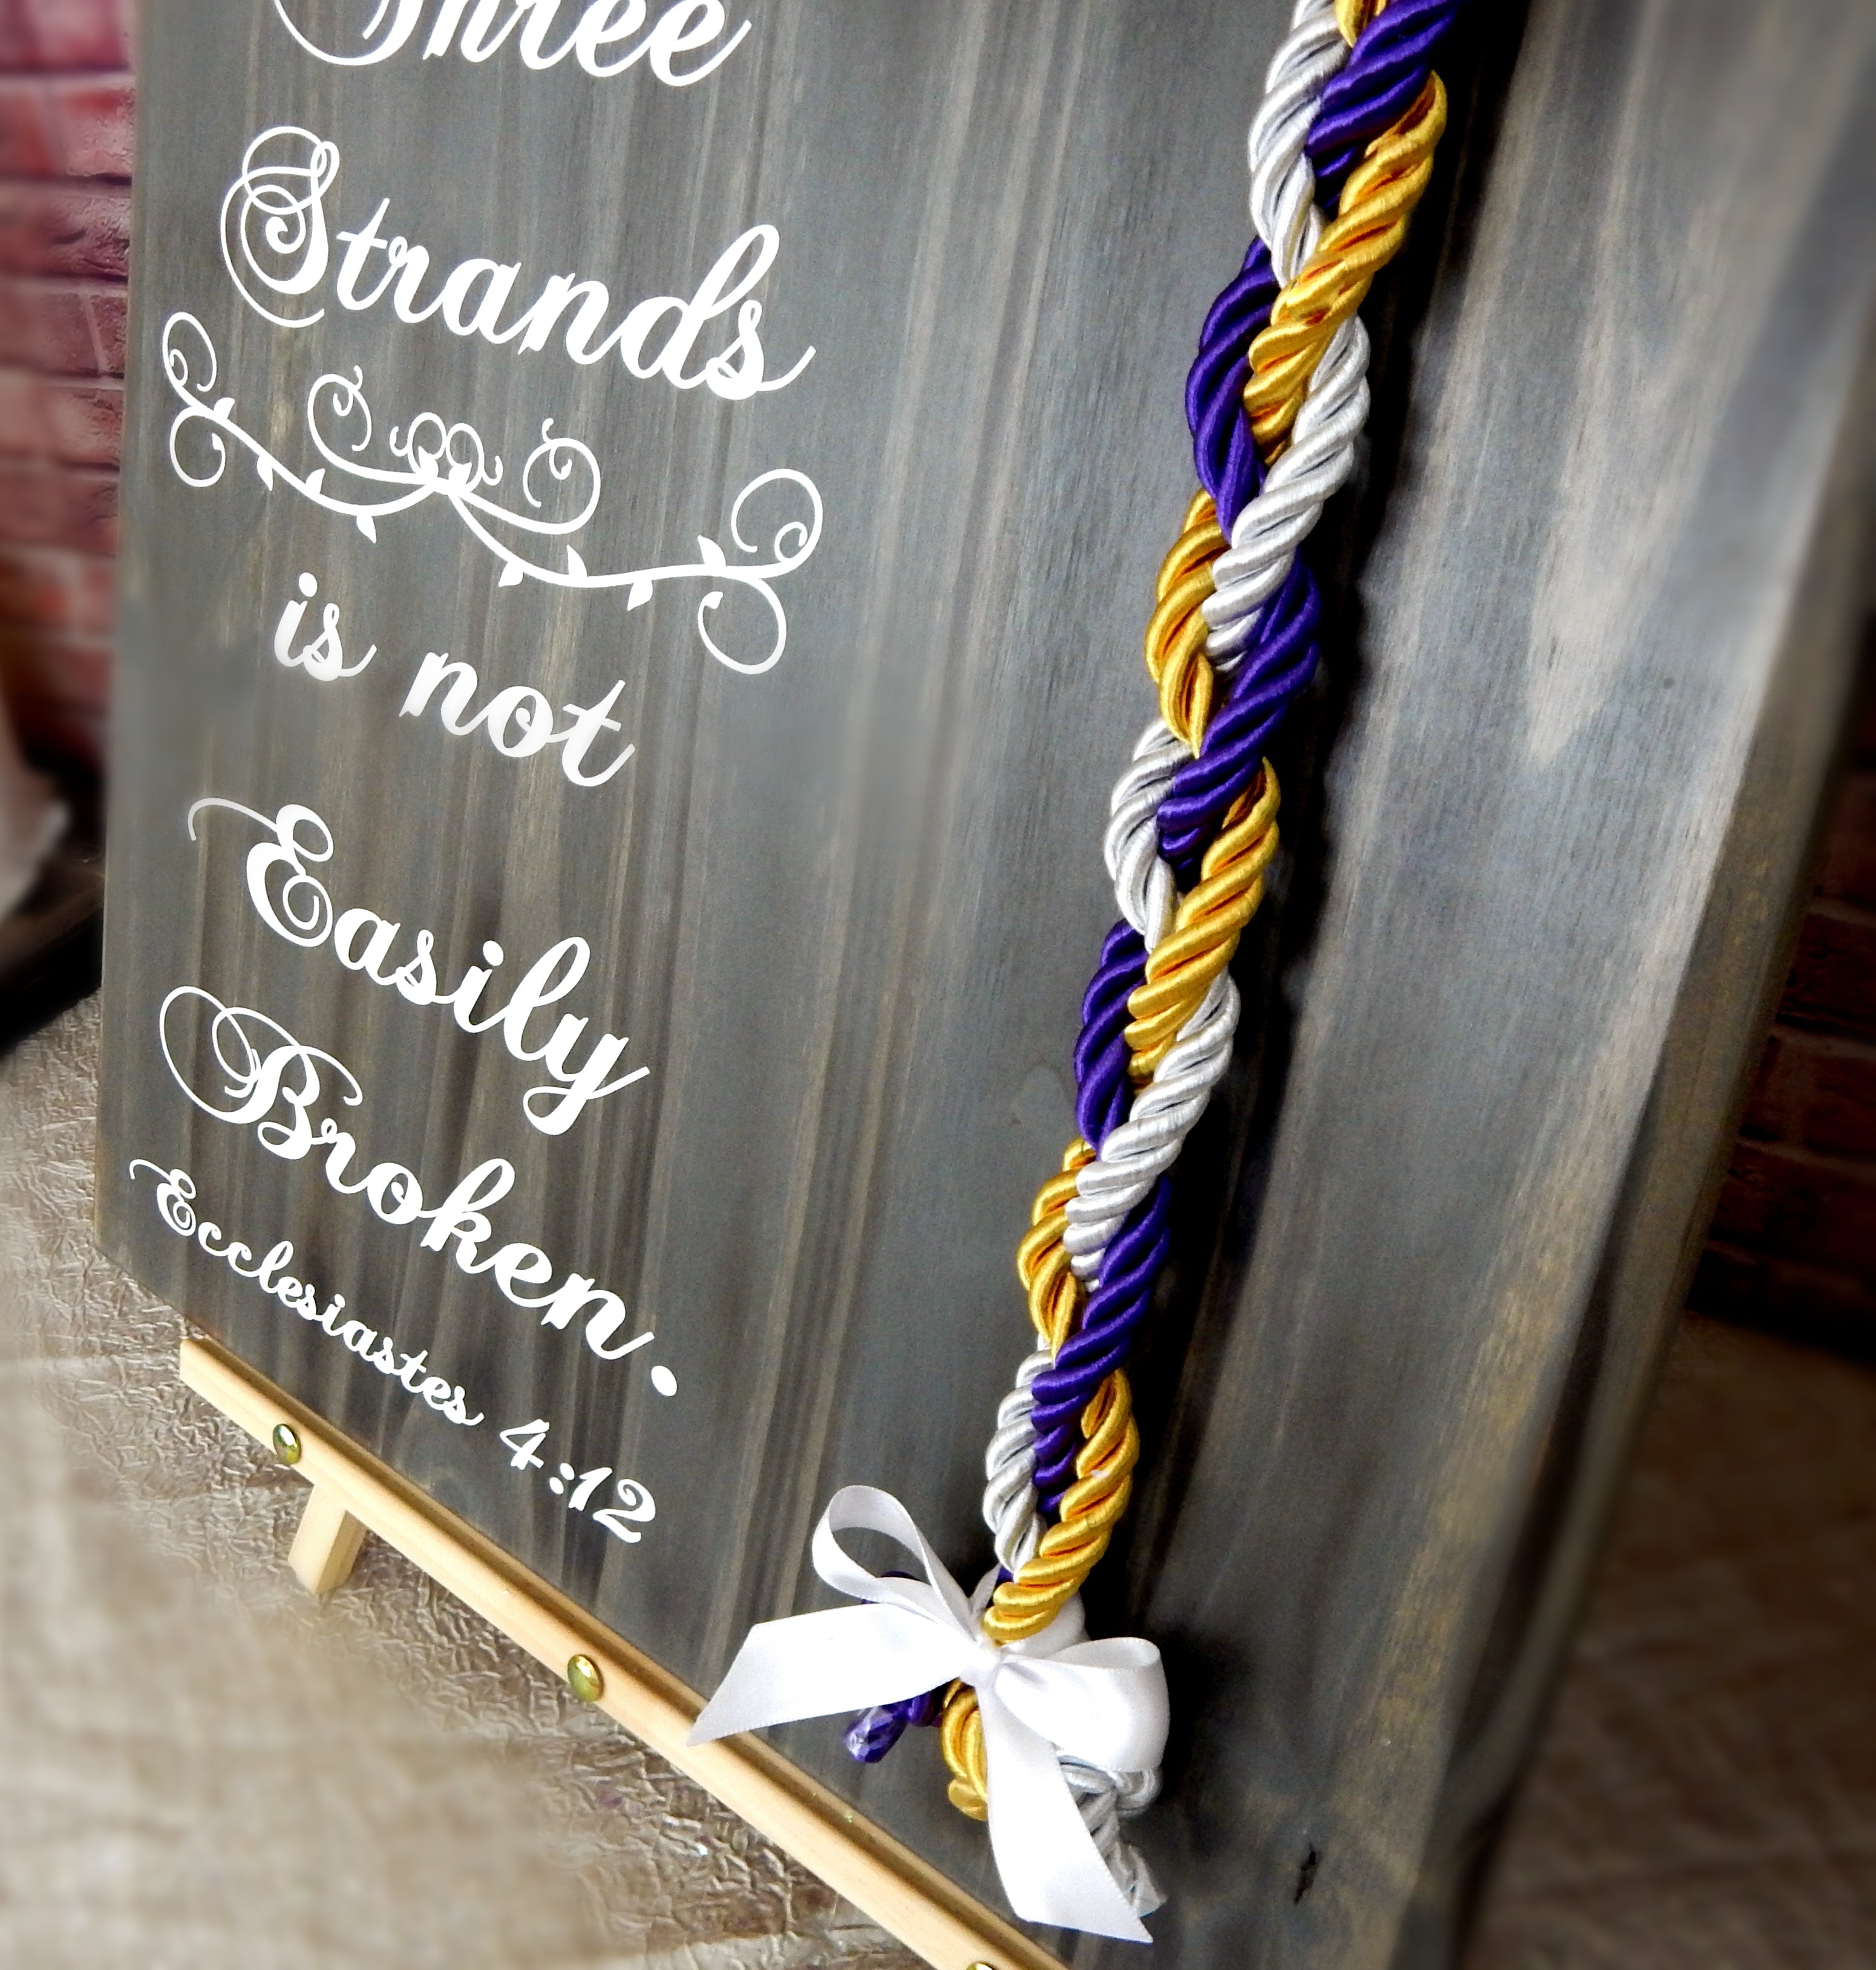 Cord of Three Strands, Wedding Board Signs, Unity Braids® - Unity Braids